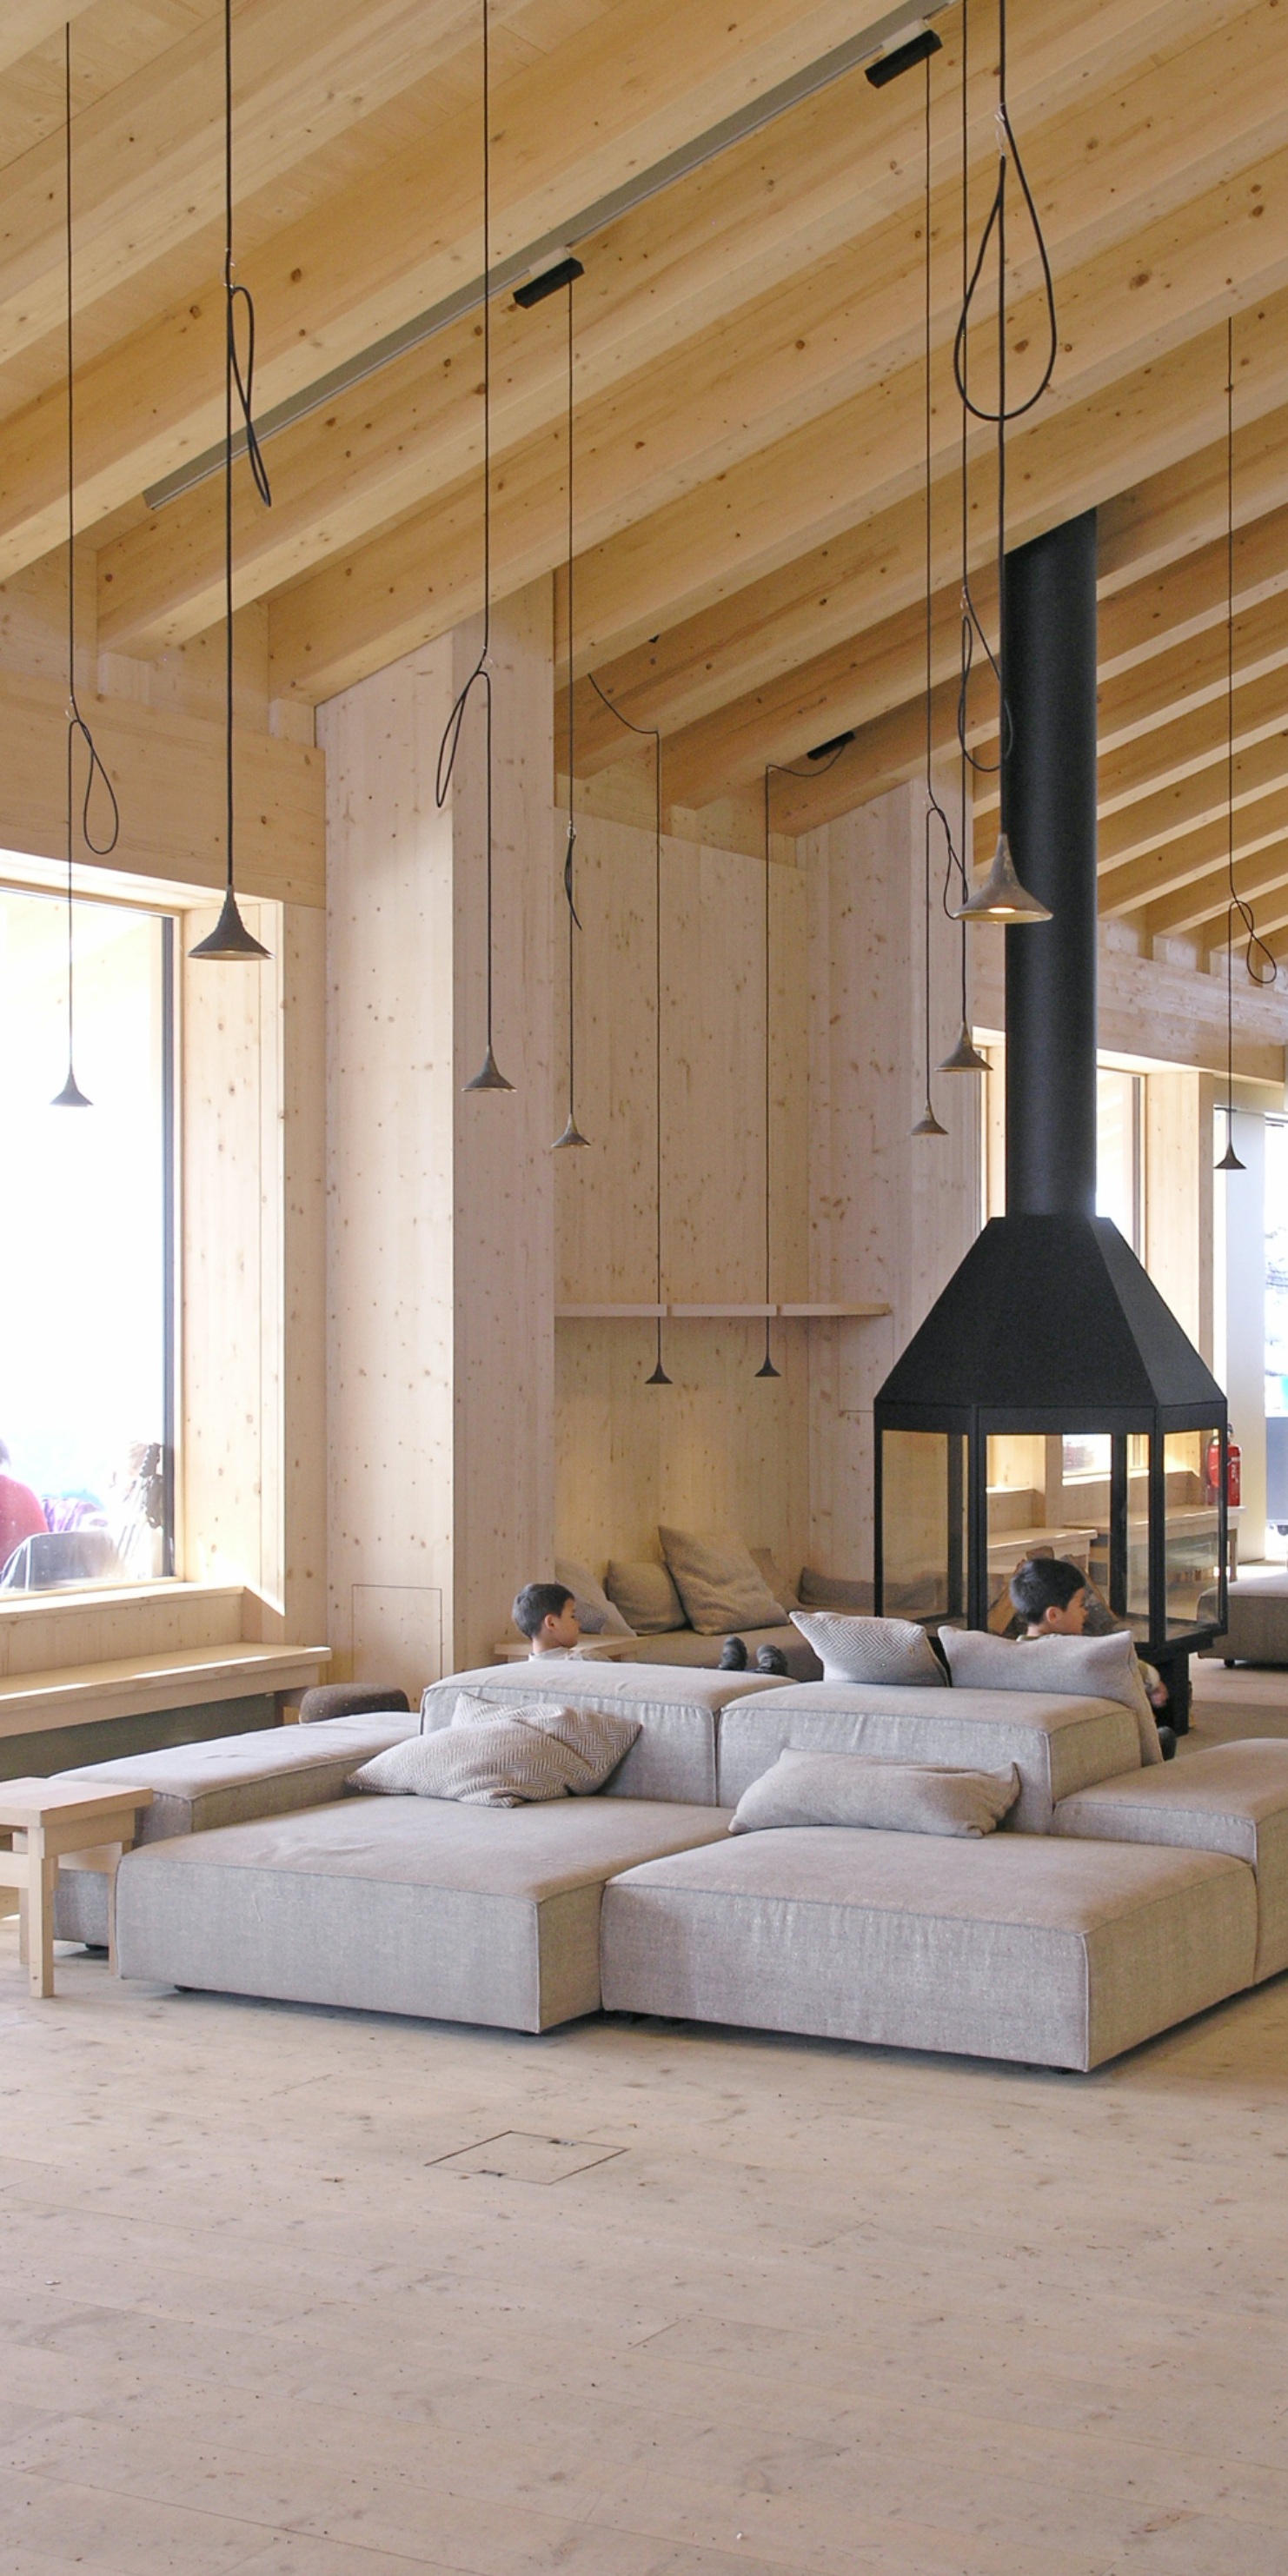 Prise de vue d’un coin salon confortable et lumineux avec poêle-cheminée et canapé